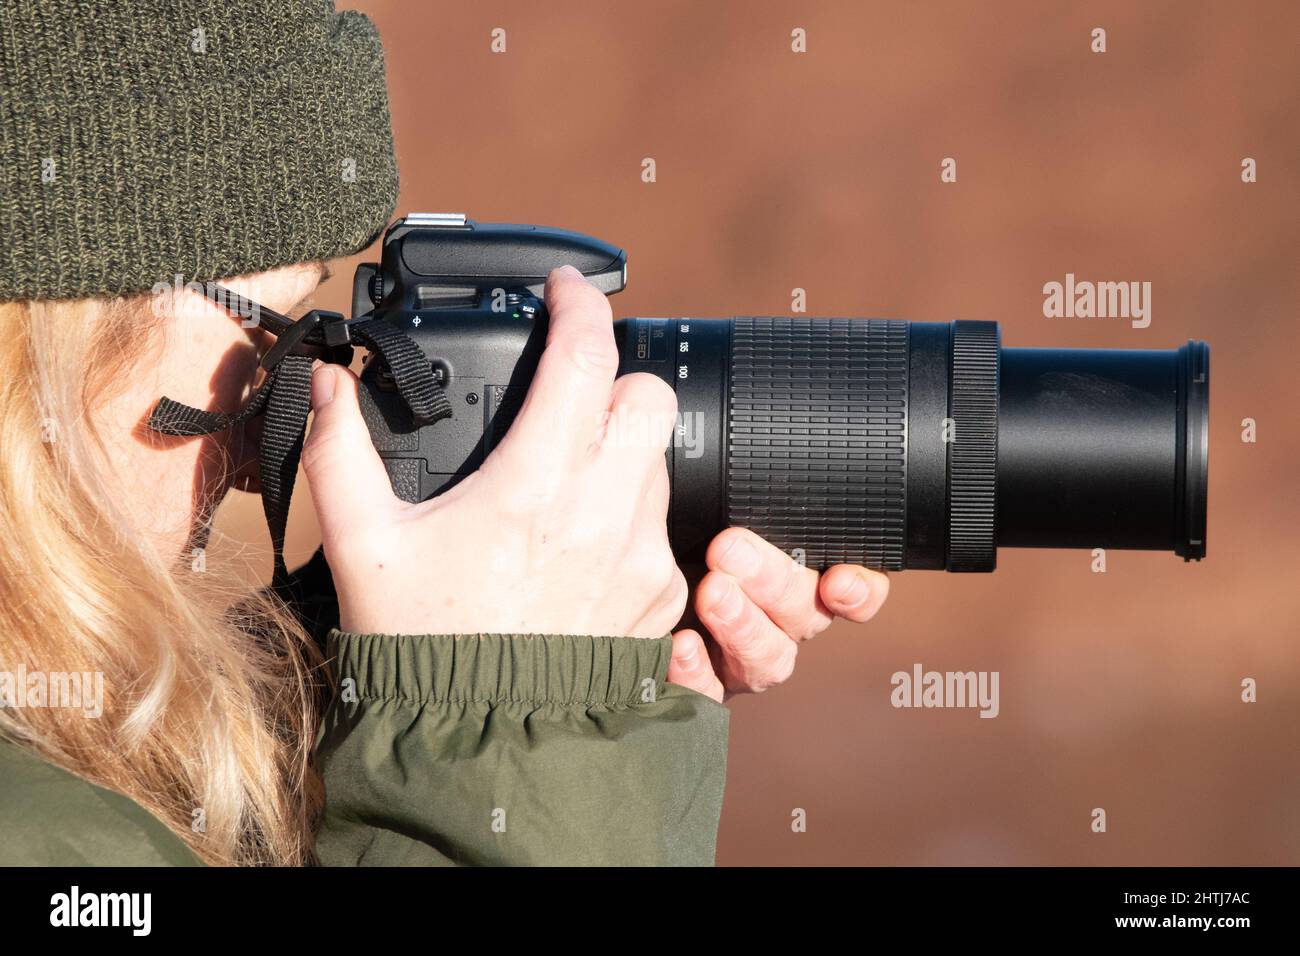 Eine Frau macht an einem kalten Wintertag ein Wildtierfoto. Sie trägt warme Kleidung und hält eine DSLR-Kamera mit langem Objektiv auf Augenhöhe. Drückt den Auslöser Stockfoto